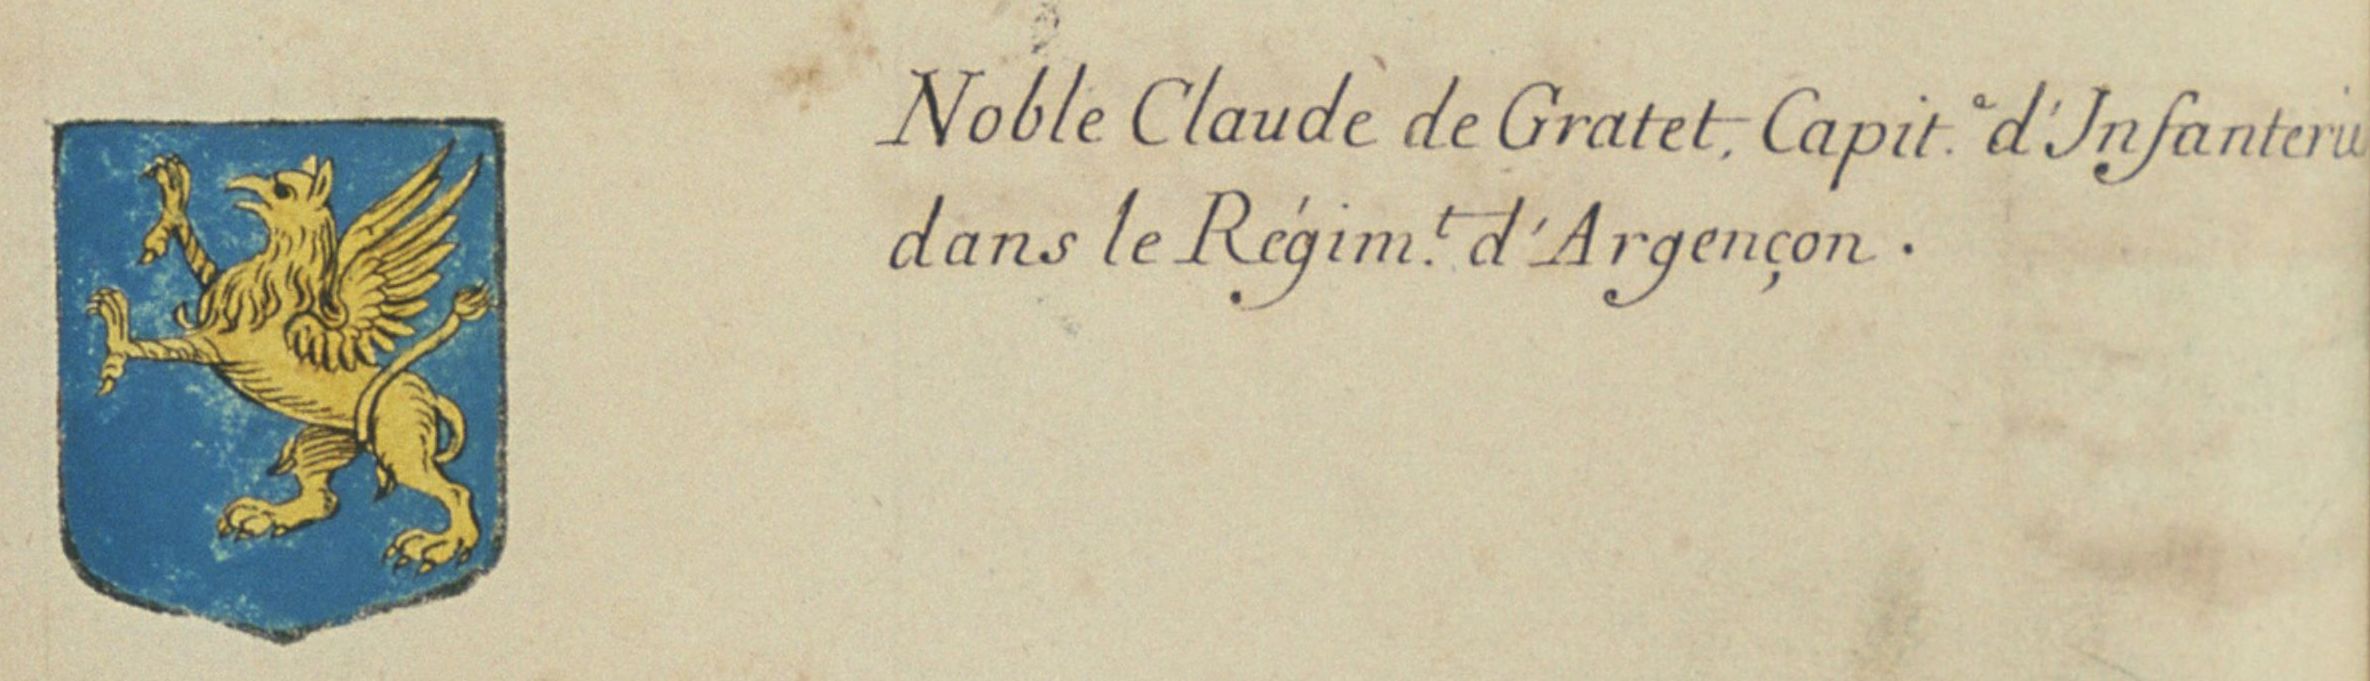 Claude de Gratet